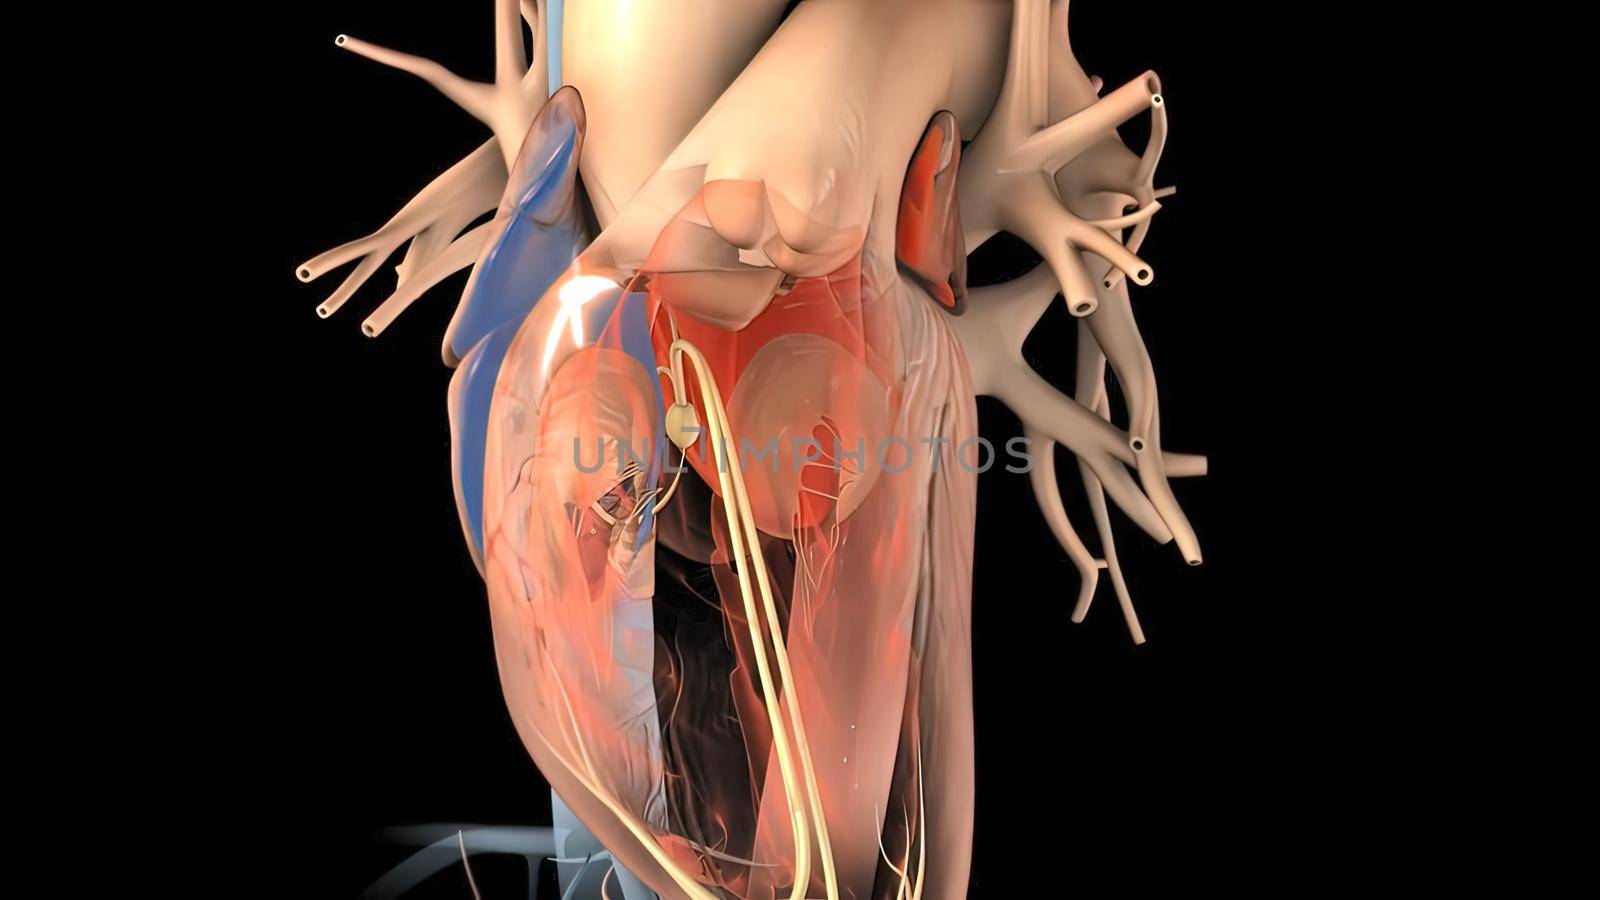 Heart Anatomy AV atrioventricular node For Medical Concept 3D Illustration .